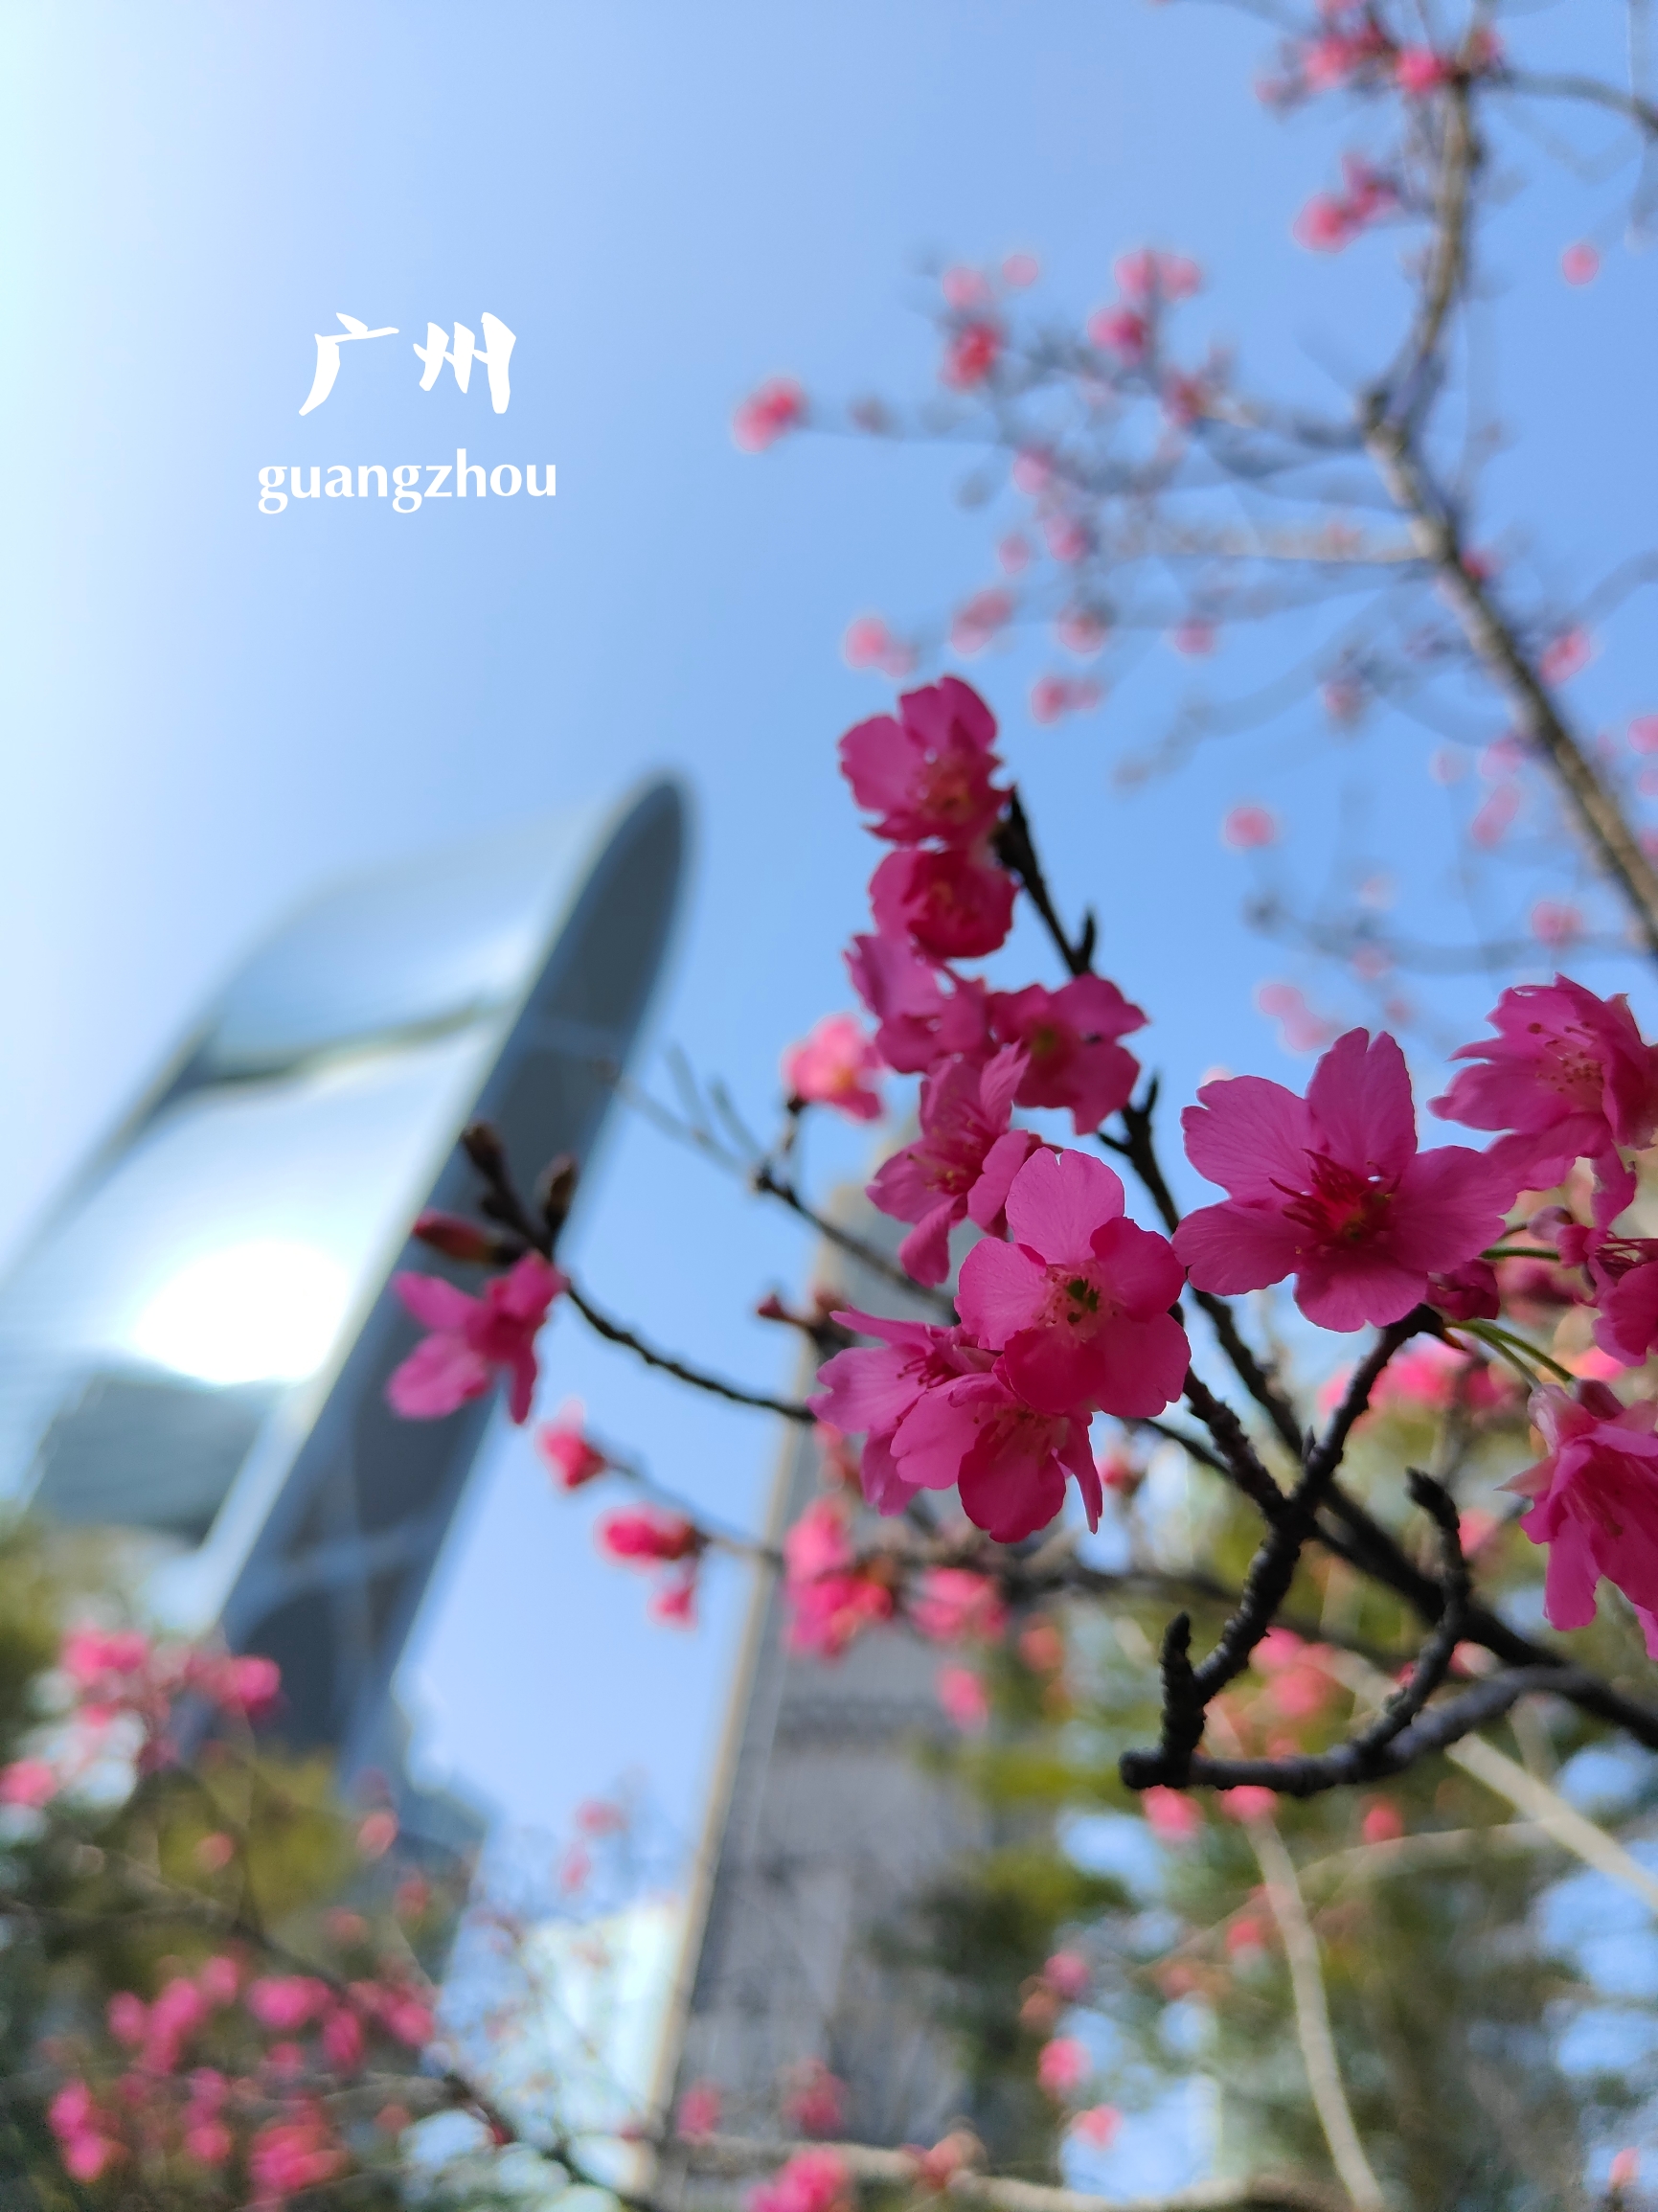 花城广场 || 春节喜遇广州中央花园樱花初放